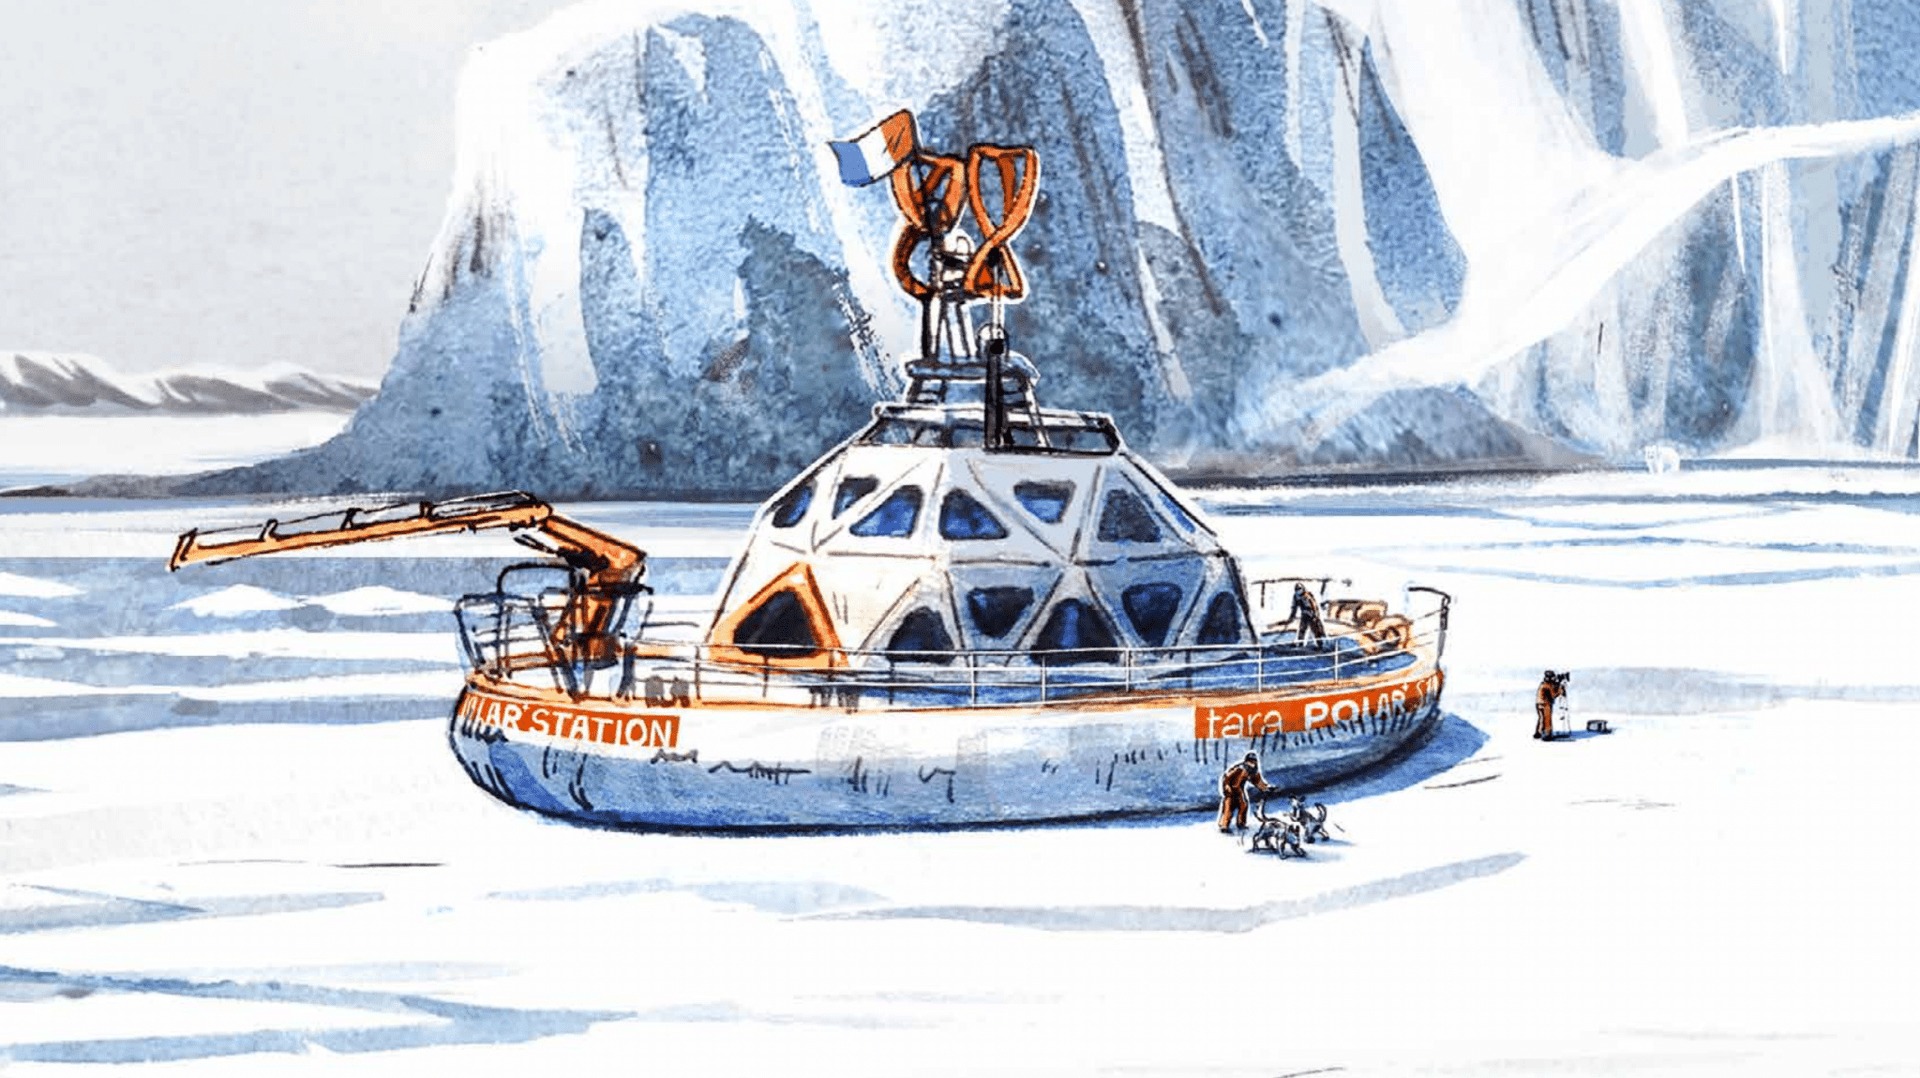  Tara polar station : un navire scientifique s’apprête à explorer l’Arctique